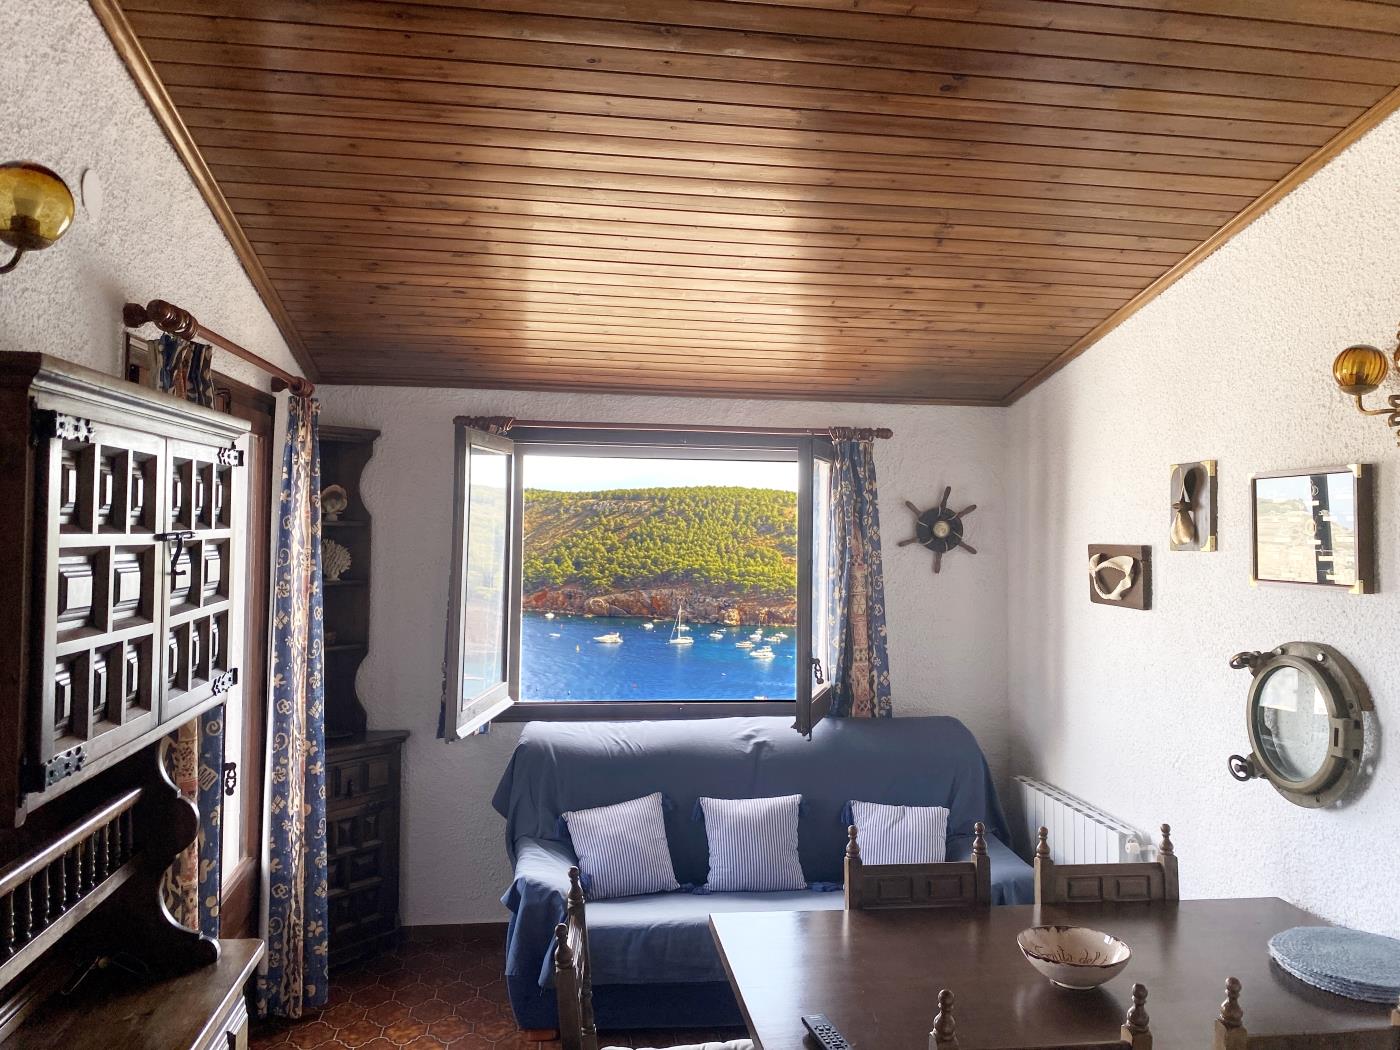 Admirez la vue sur la mer de la maison Marinada à l'Escala